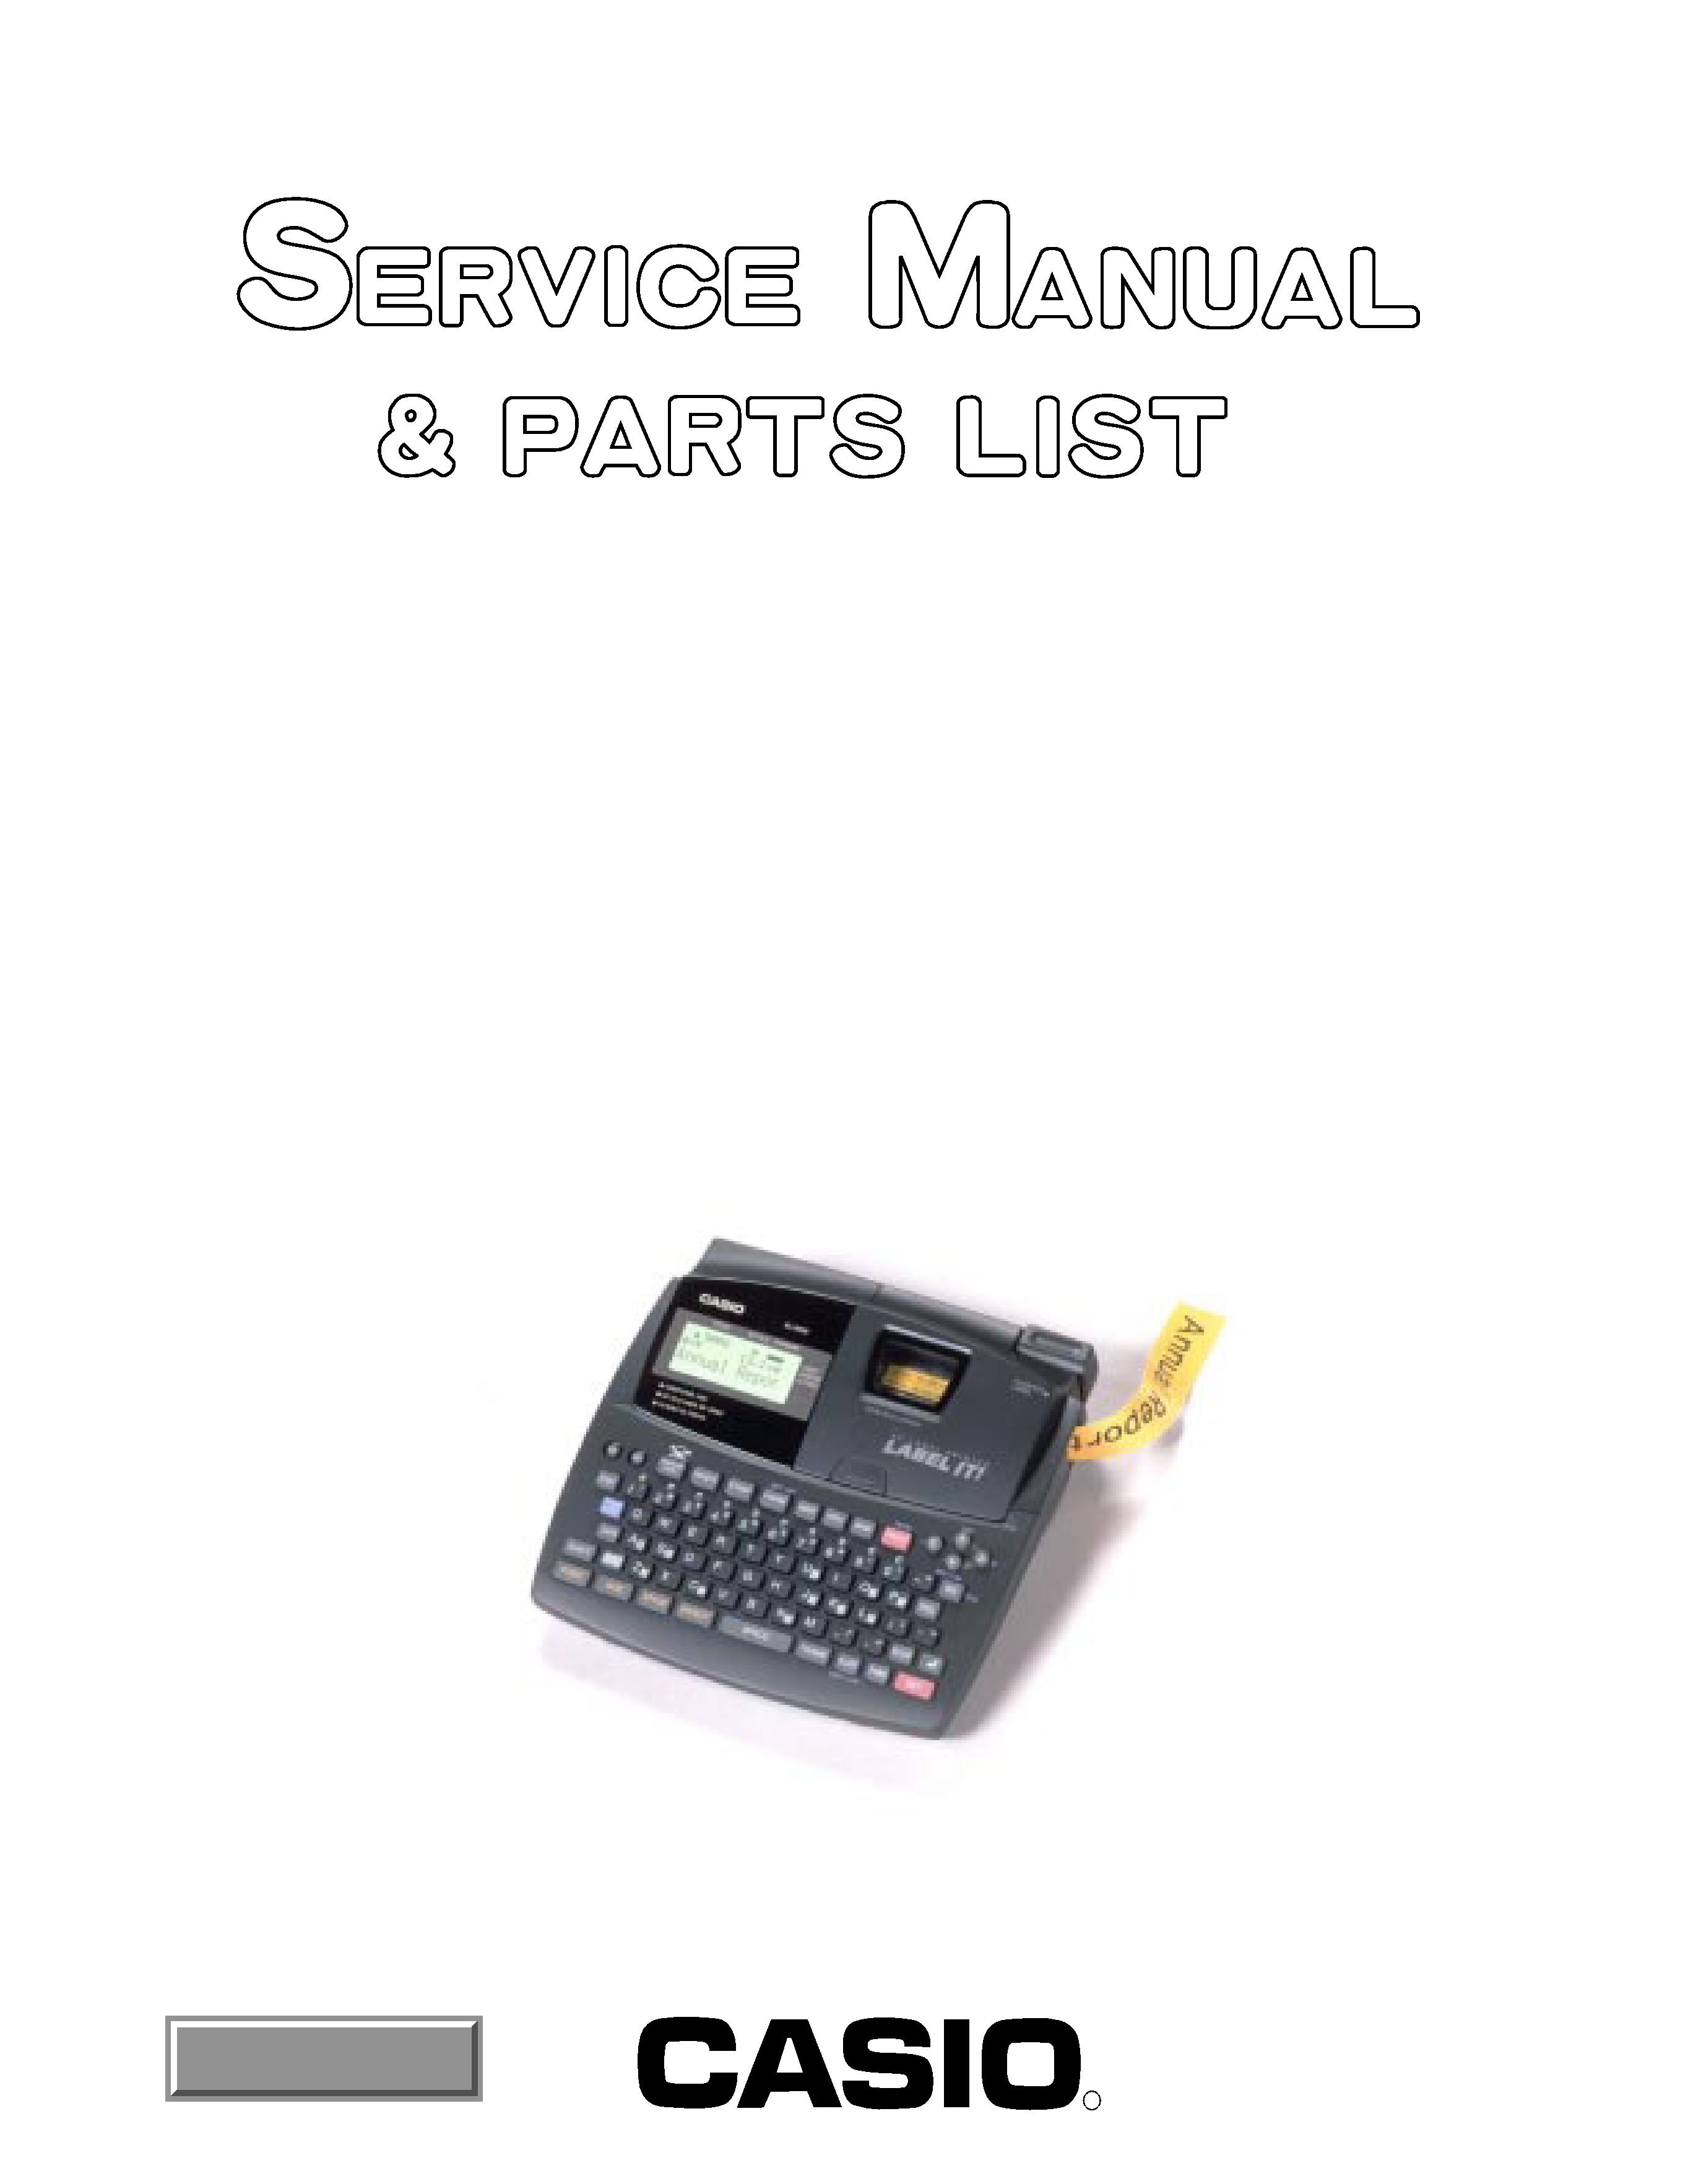 CASIO KL8100 - Service Manual Immediate Download